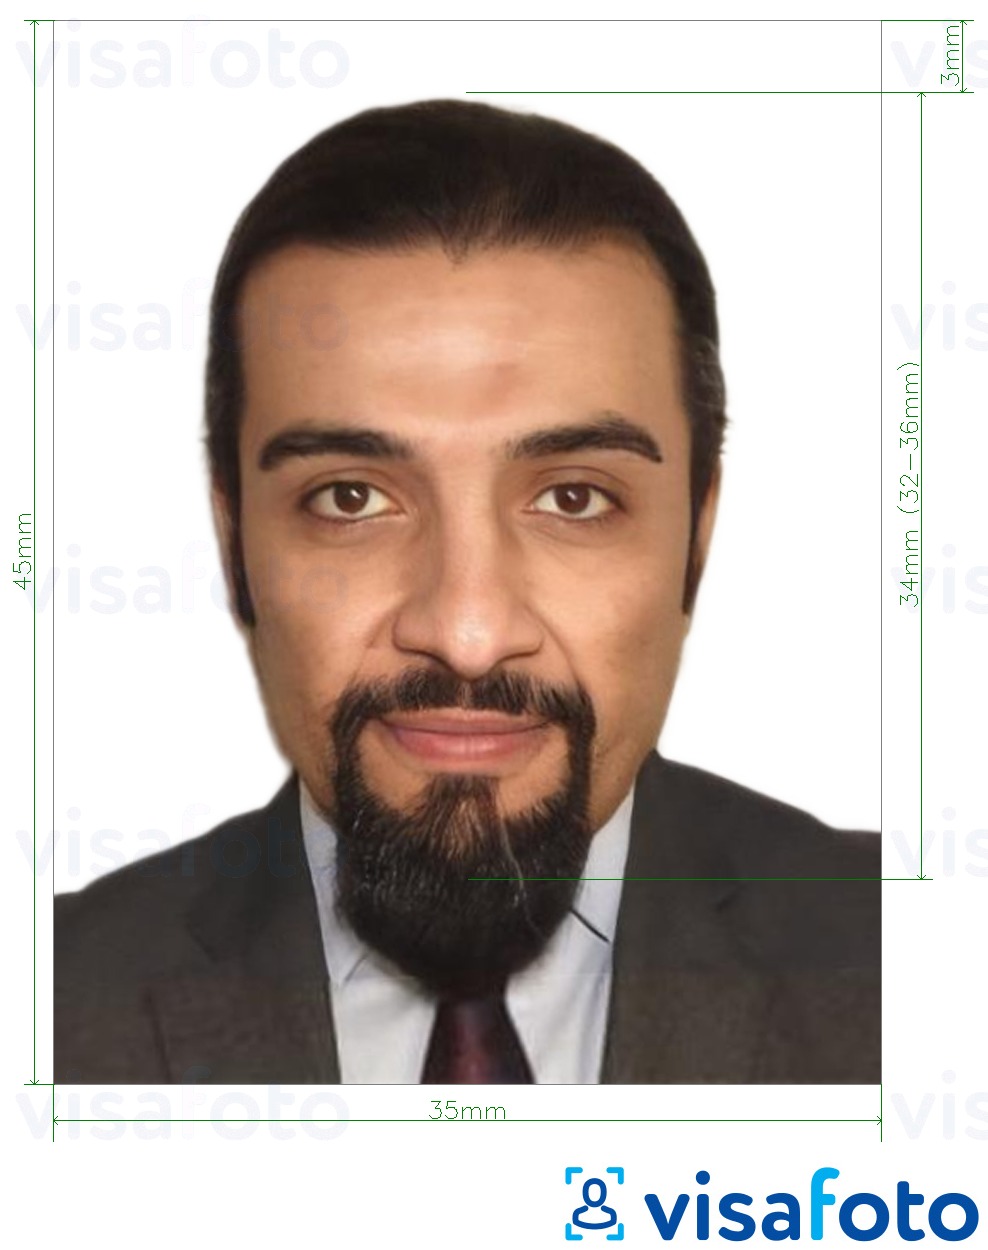 Príklad fotografie pre Libanonské vízum 3,5x4,5 cm (35x45 mm) s presnou špecifikáciou veľkosti